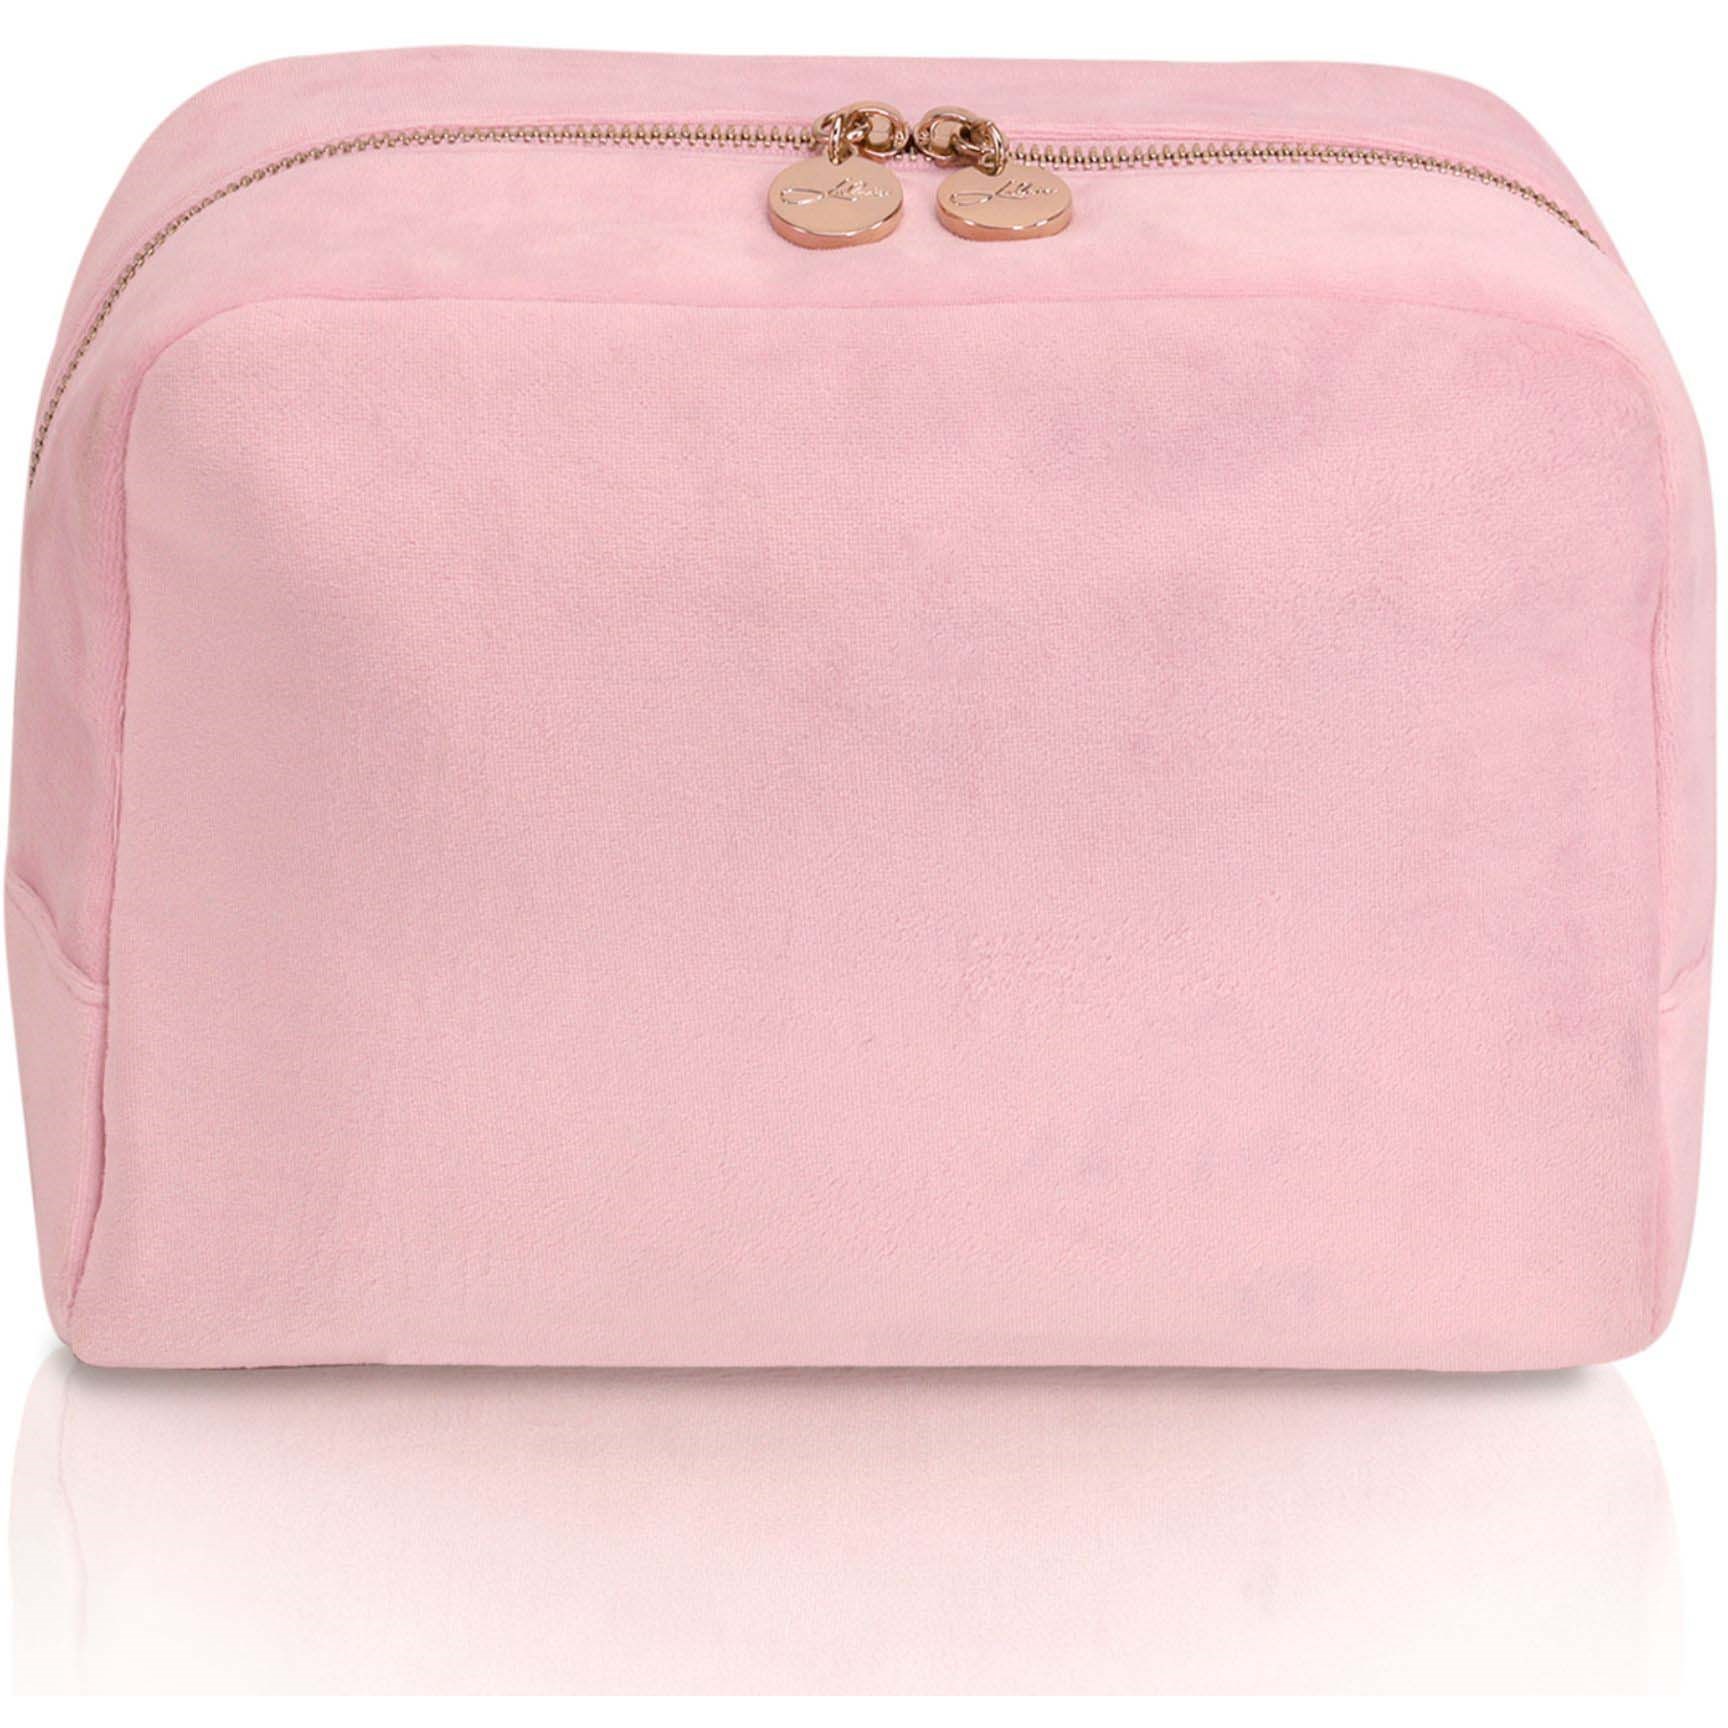 LULUS ACCESSORIES Toiletry Bag Velvet Pink